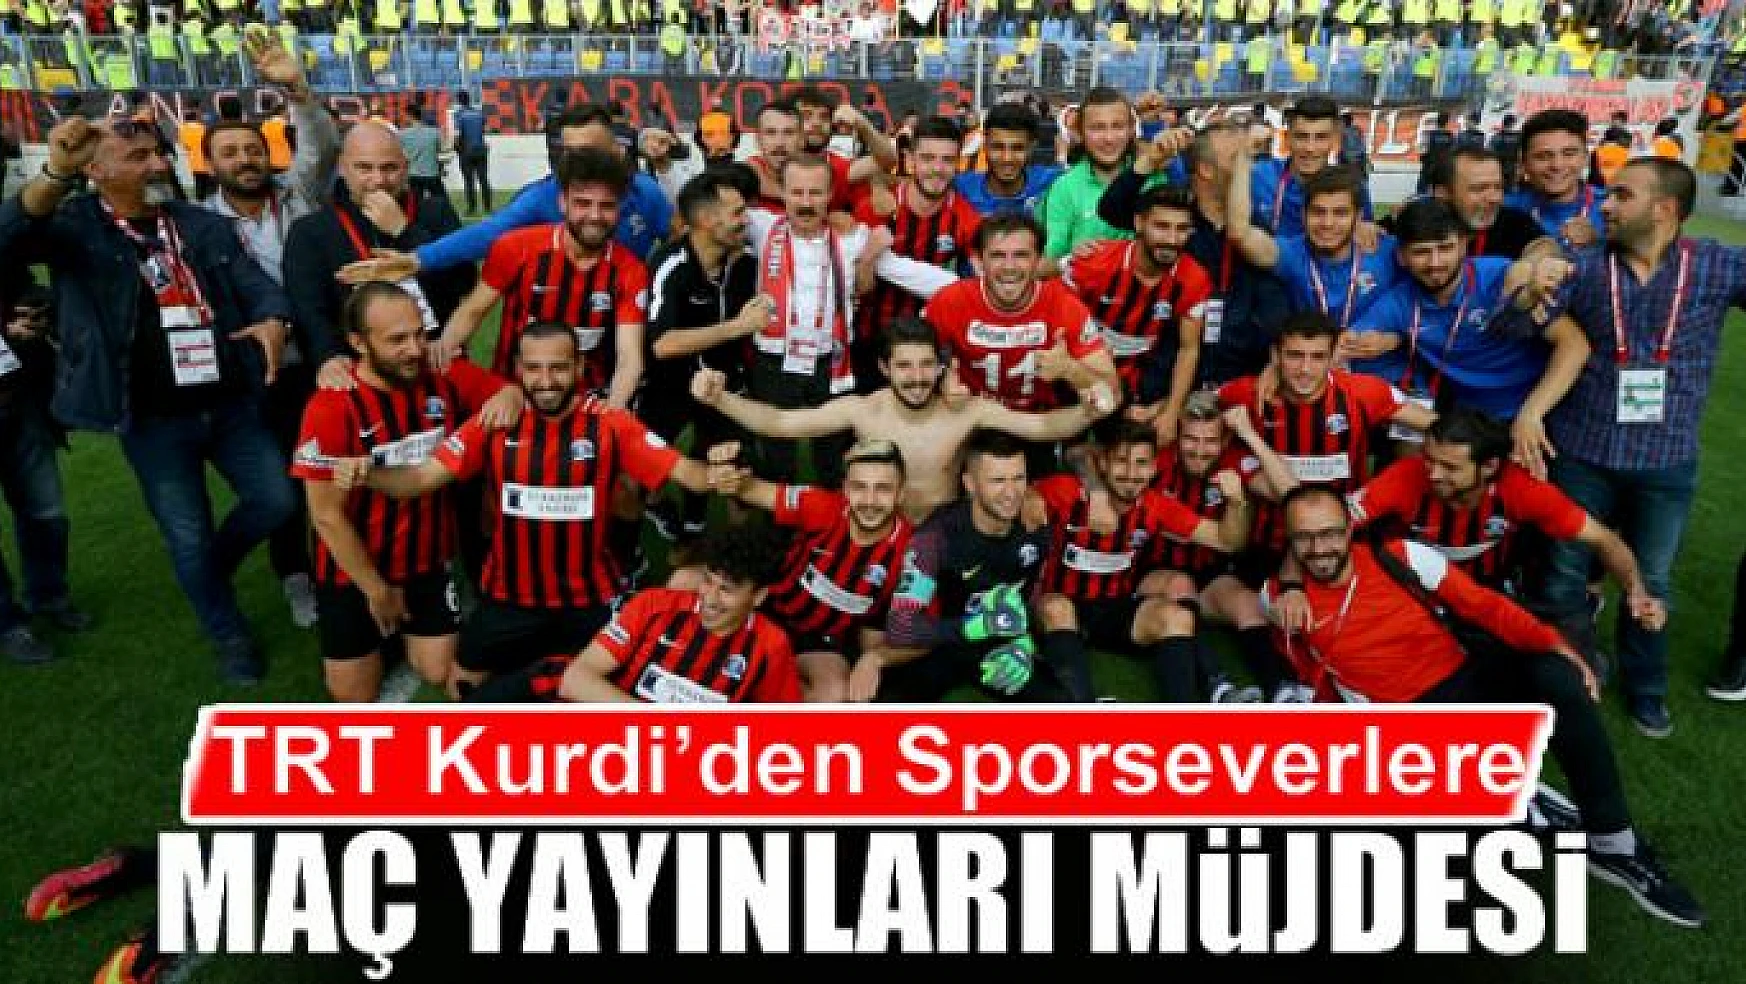 TRT Kurdi'den Sporseverlere maç yayınları müjdesi